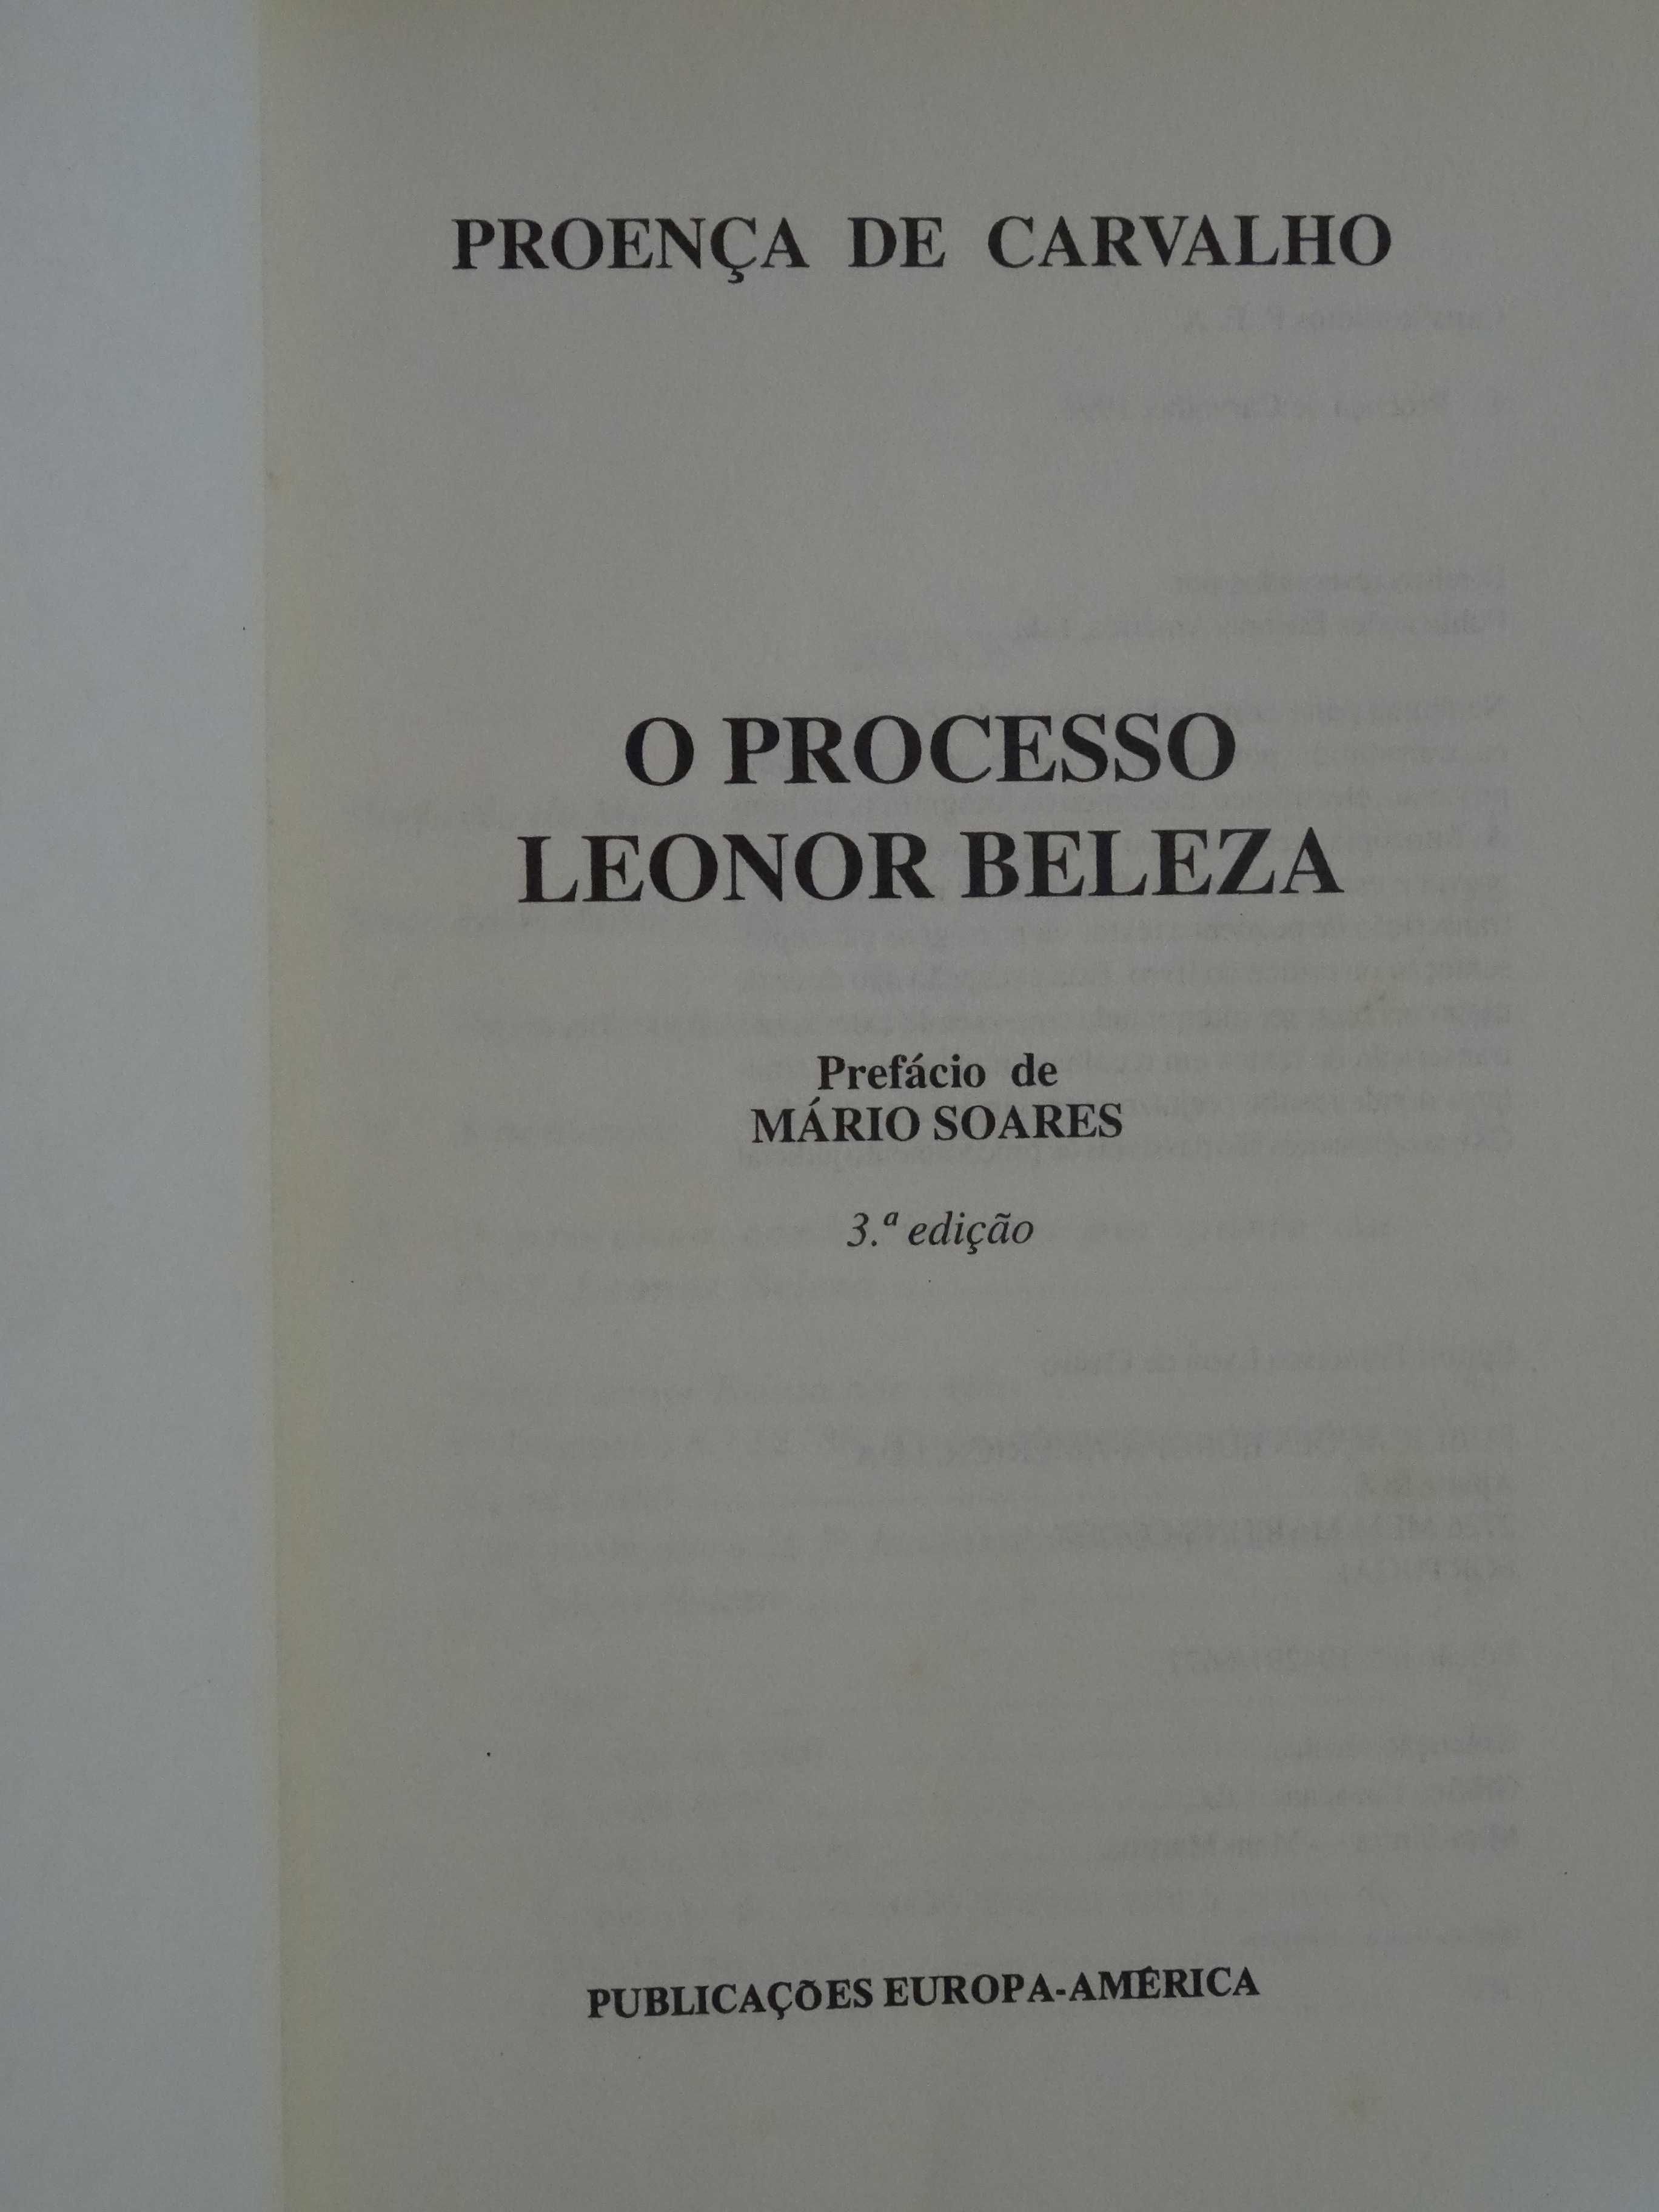 O Processo Leonor Beleza de Daniel Proença de Carvalho